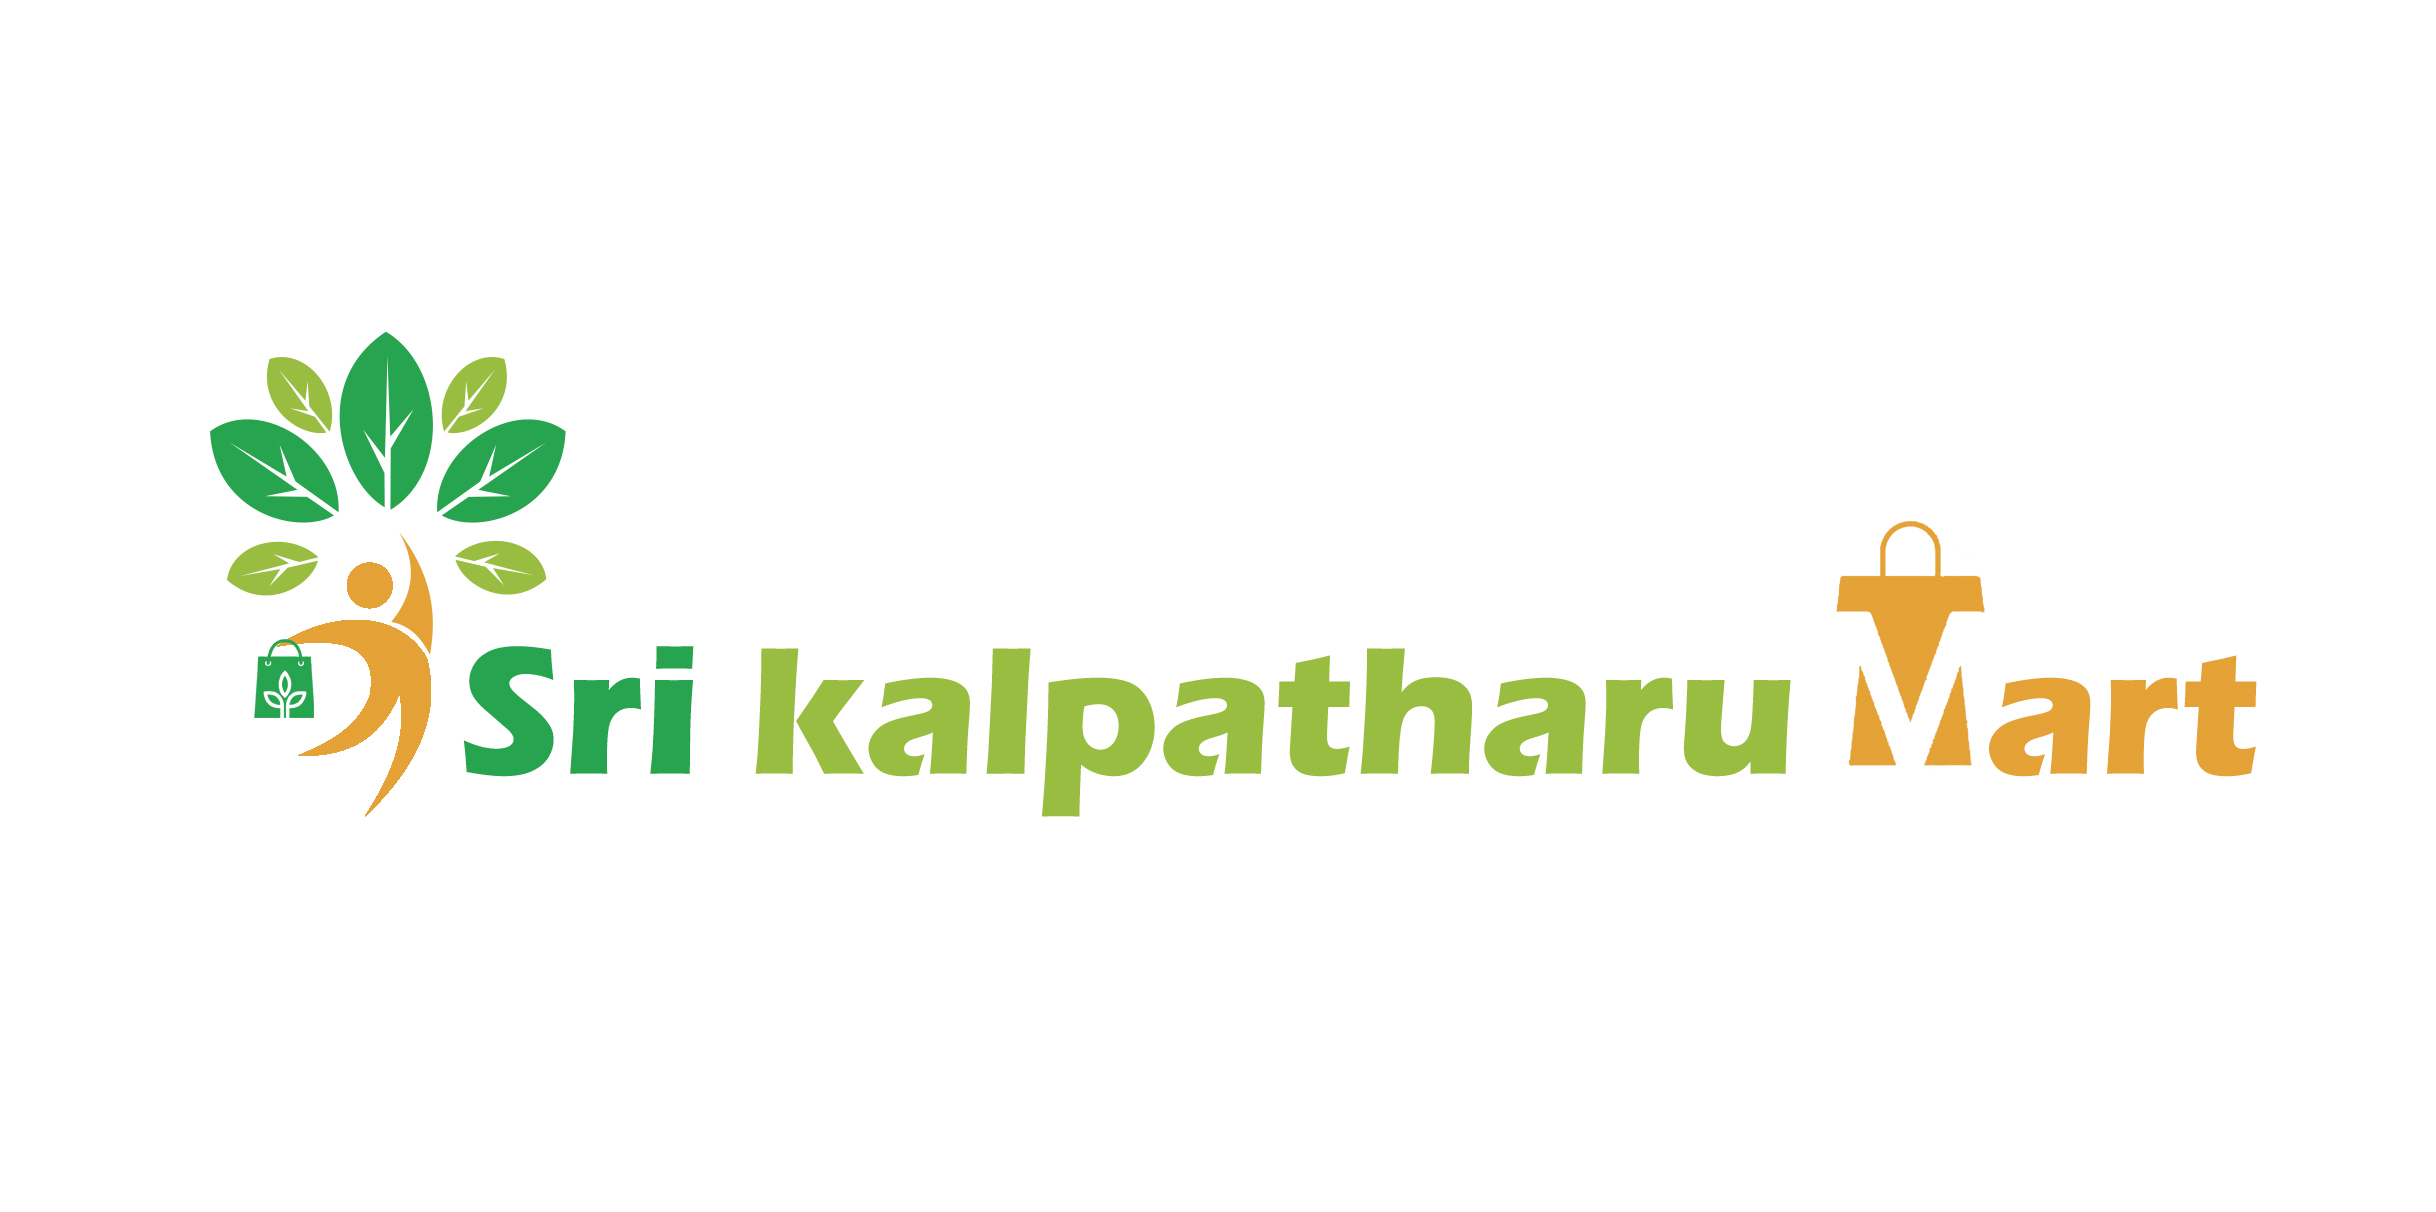 1601646691sri-kalpatharu-mart-logo2.jpg